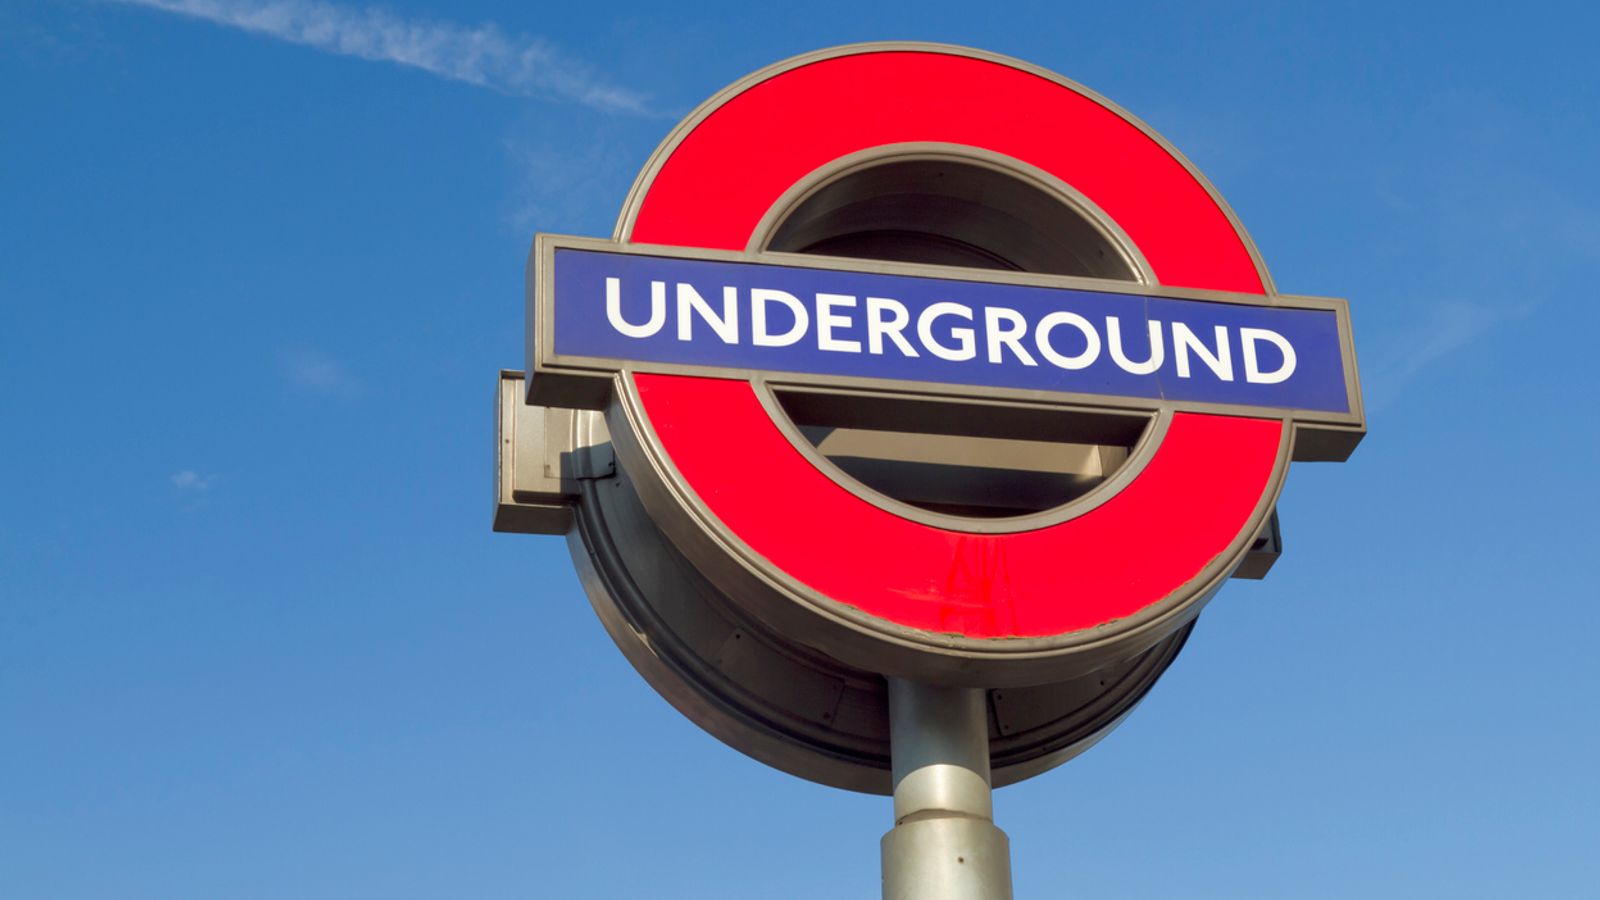 Tube driver who led ‘free Palestine’ chant on London Underground train suspended, TfL says | UK News